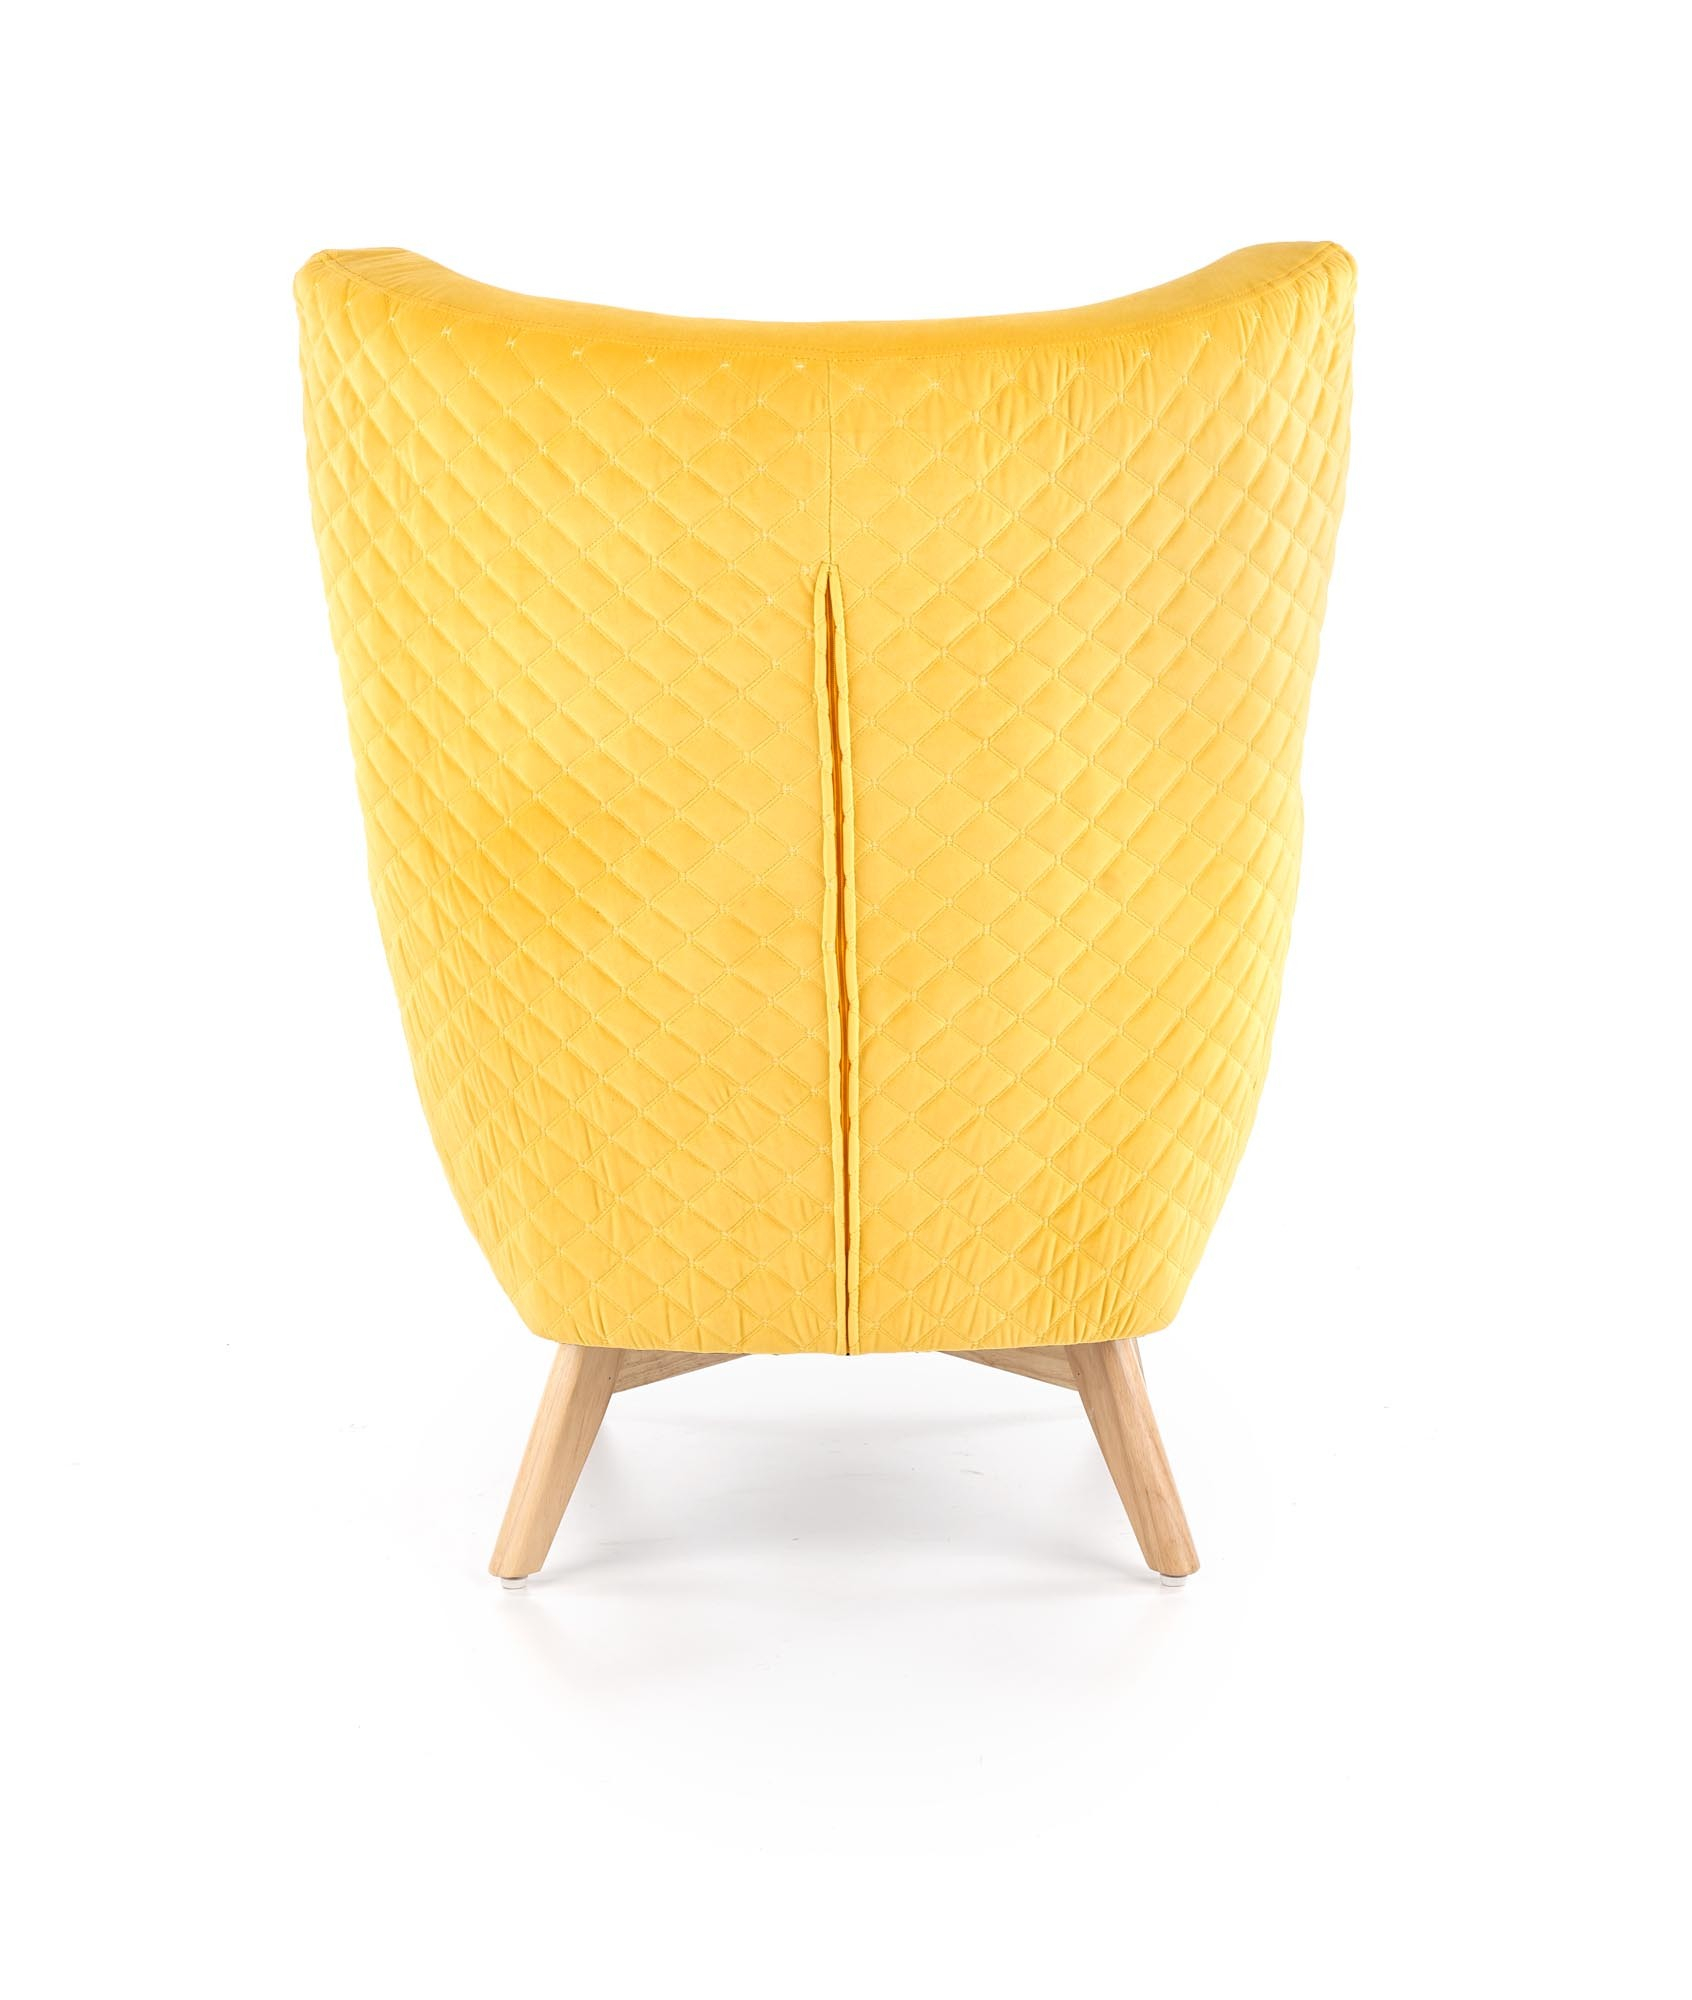 MARVEL fotel wypoczynkowy żółty / naturalny